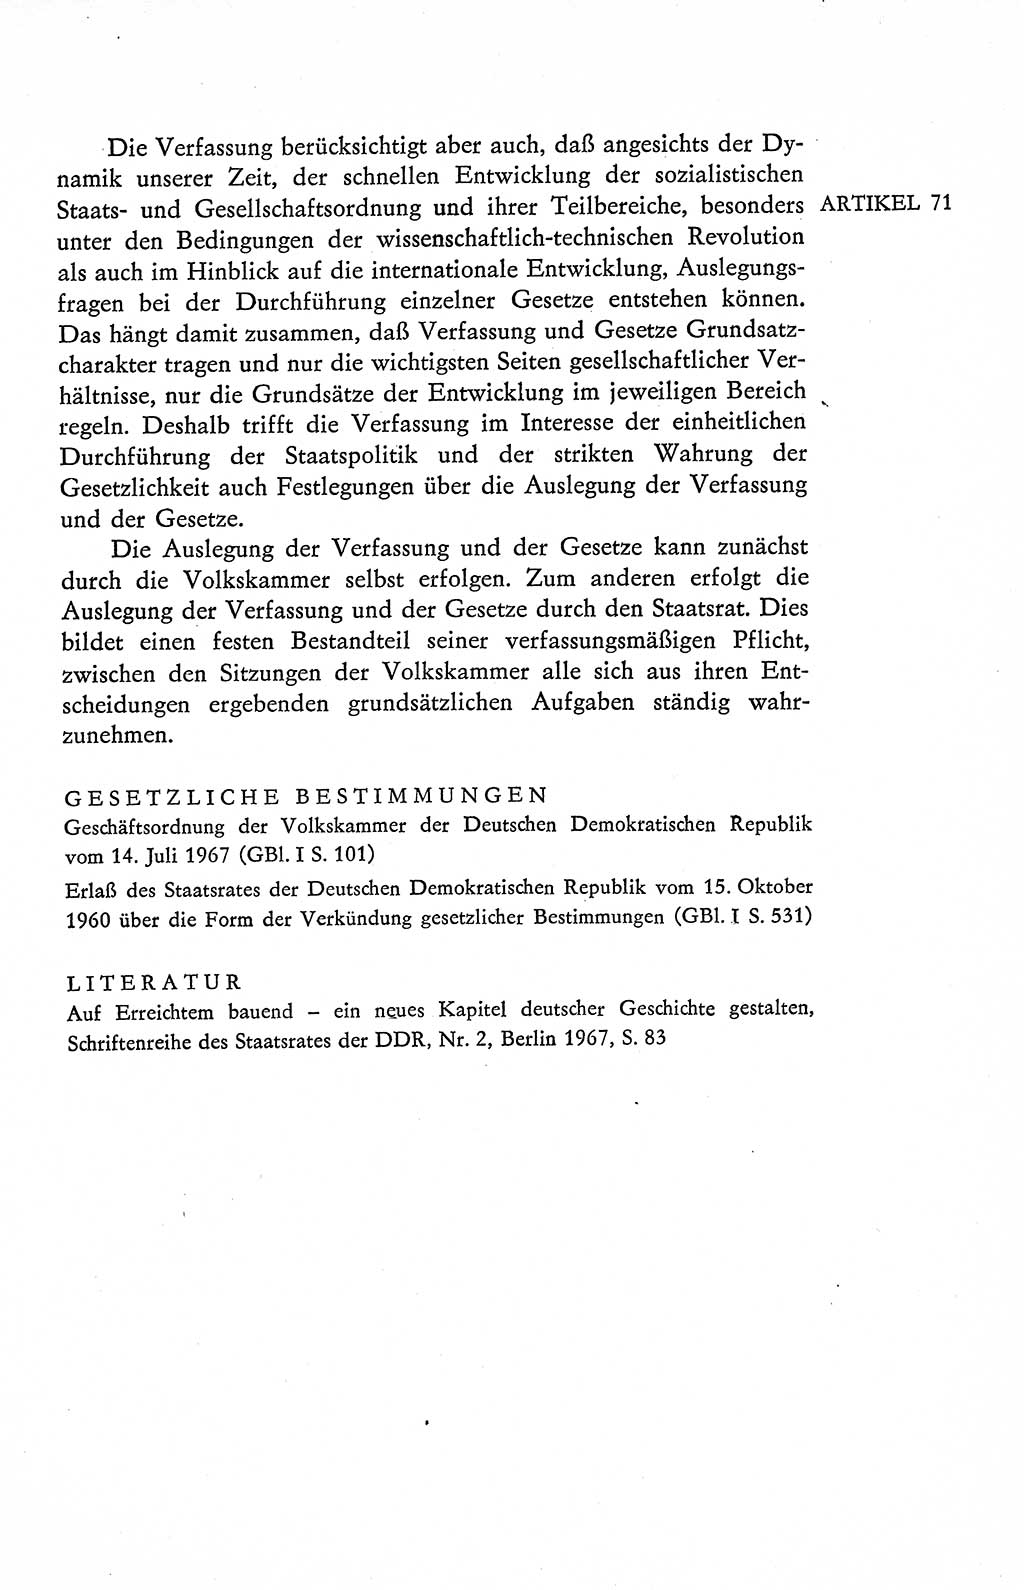 Verfassung der Deutschen Demokratischen Republik (DDR), Dokumente, Kommentar 1969, Band 2, Seite 325 (Verf. DDR Dok. Komm. 1969, Bd. 2, S. 325)